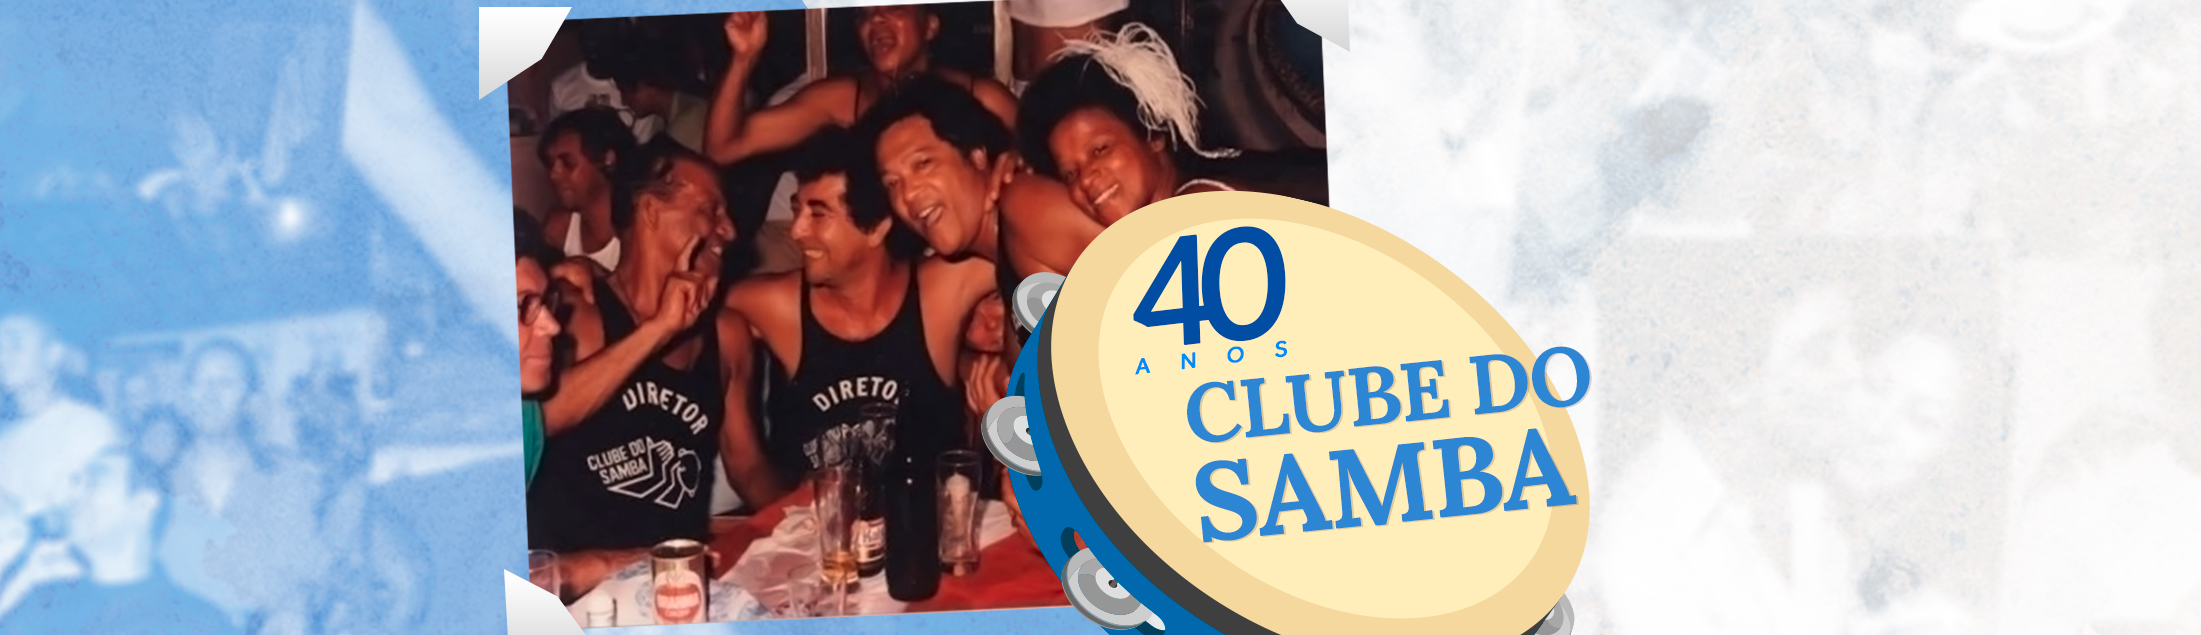 Agoniza, mas não morre: João Nogueira e os 40 anos do Clube do Samba